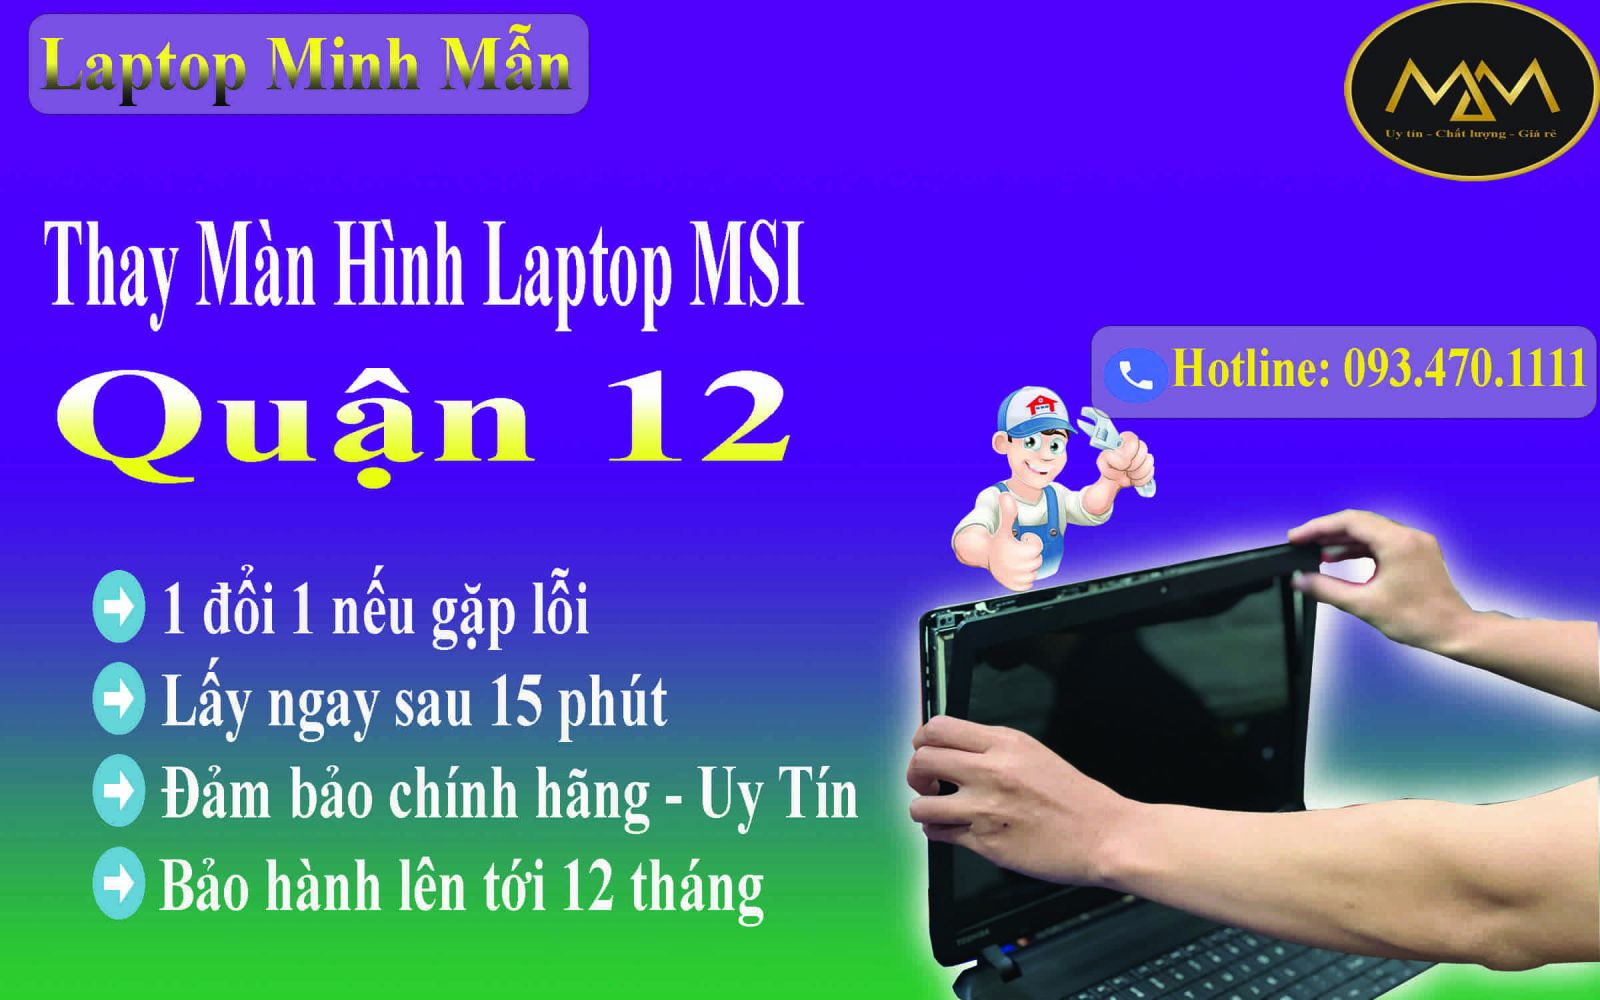 Thay-màn-hình-laptop-MSI-giá-rẻ-quận-12